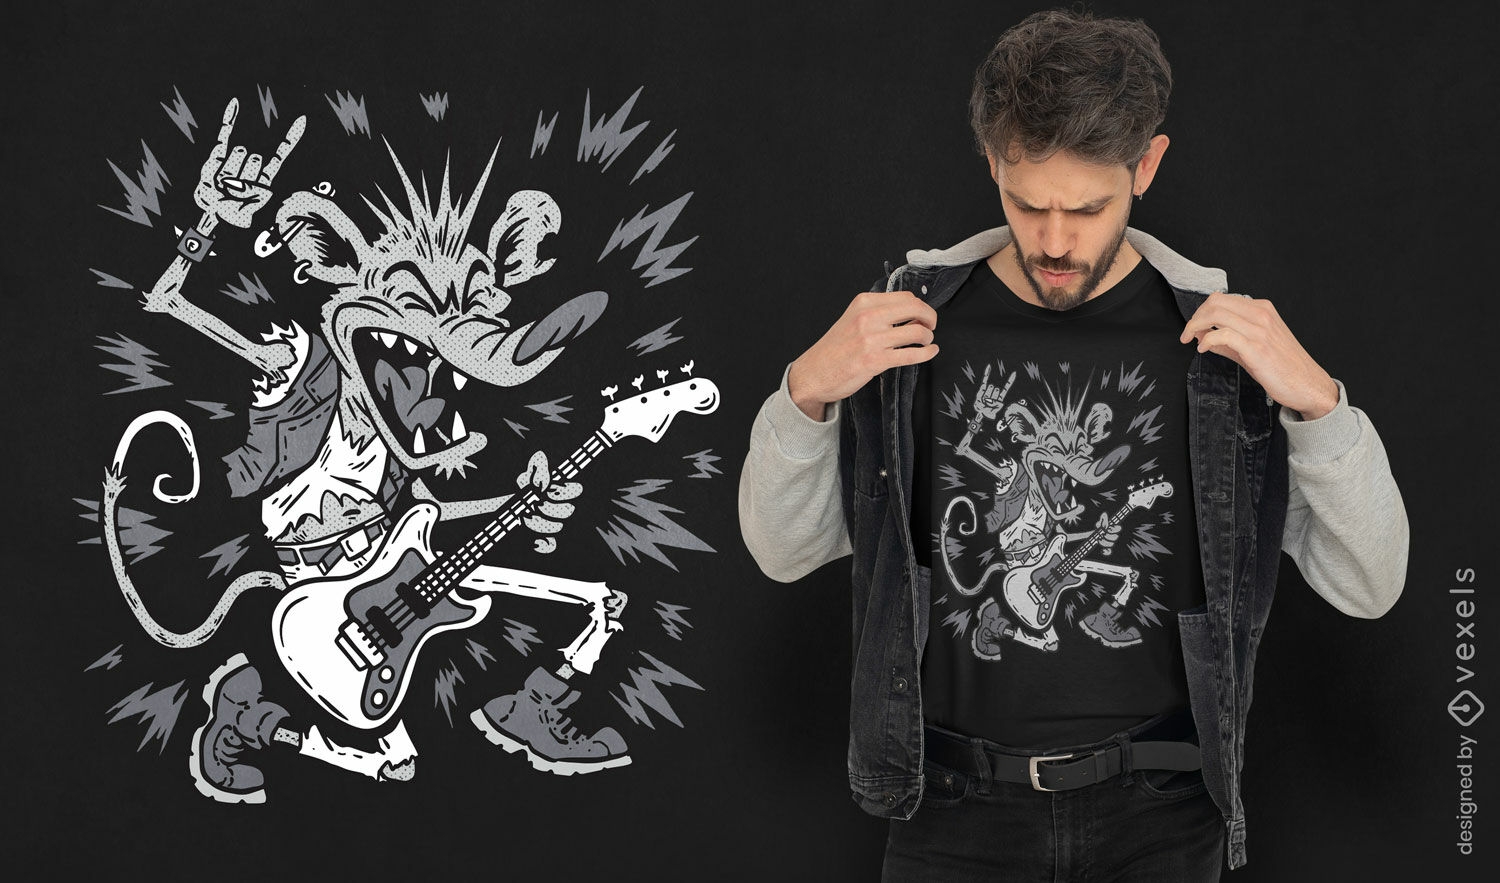 Rat with a guitar t-shirt design